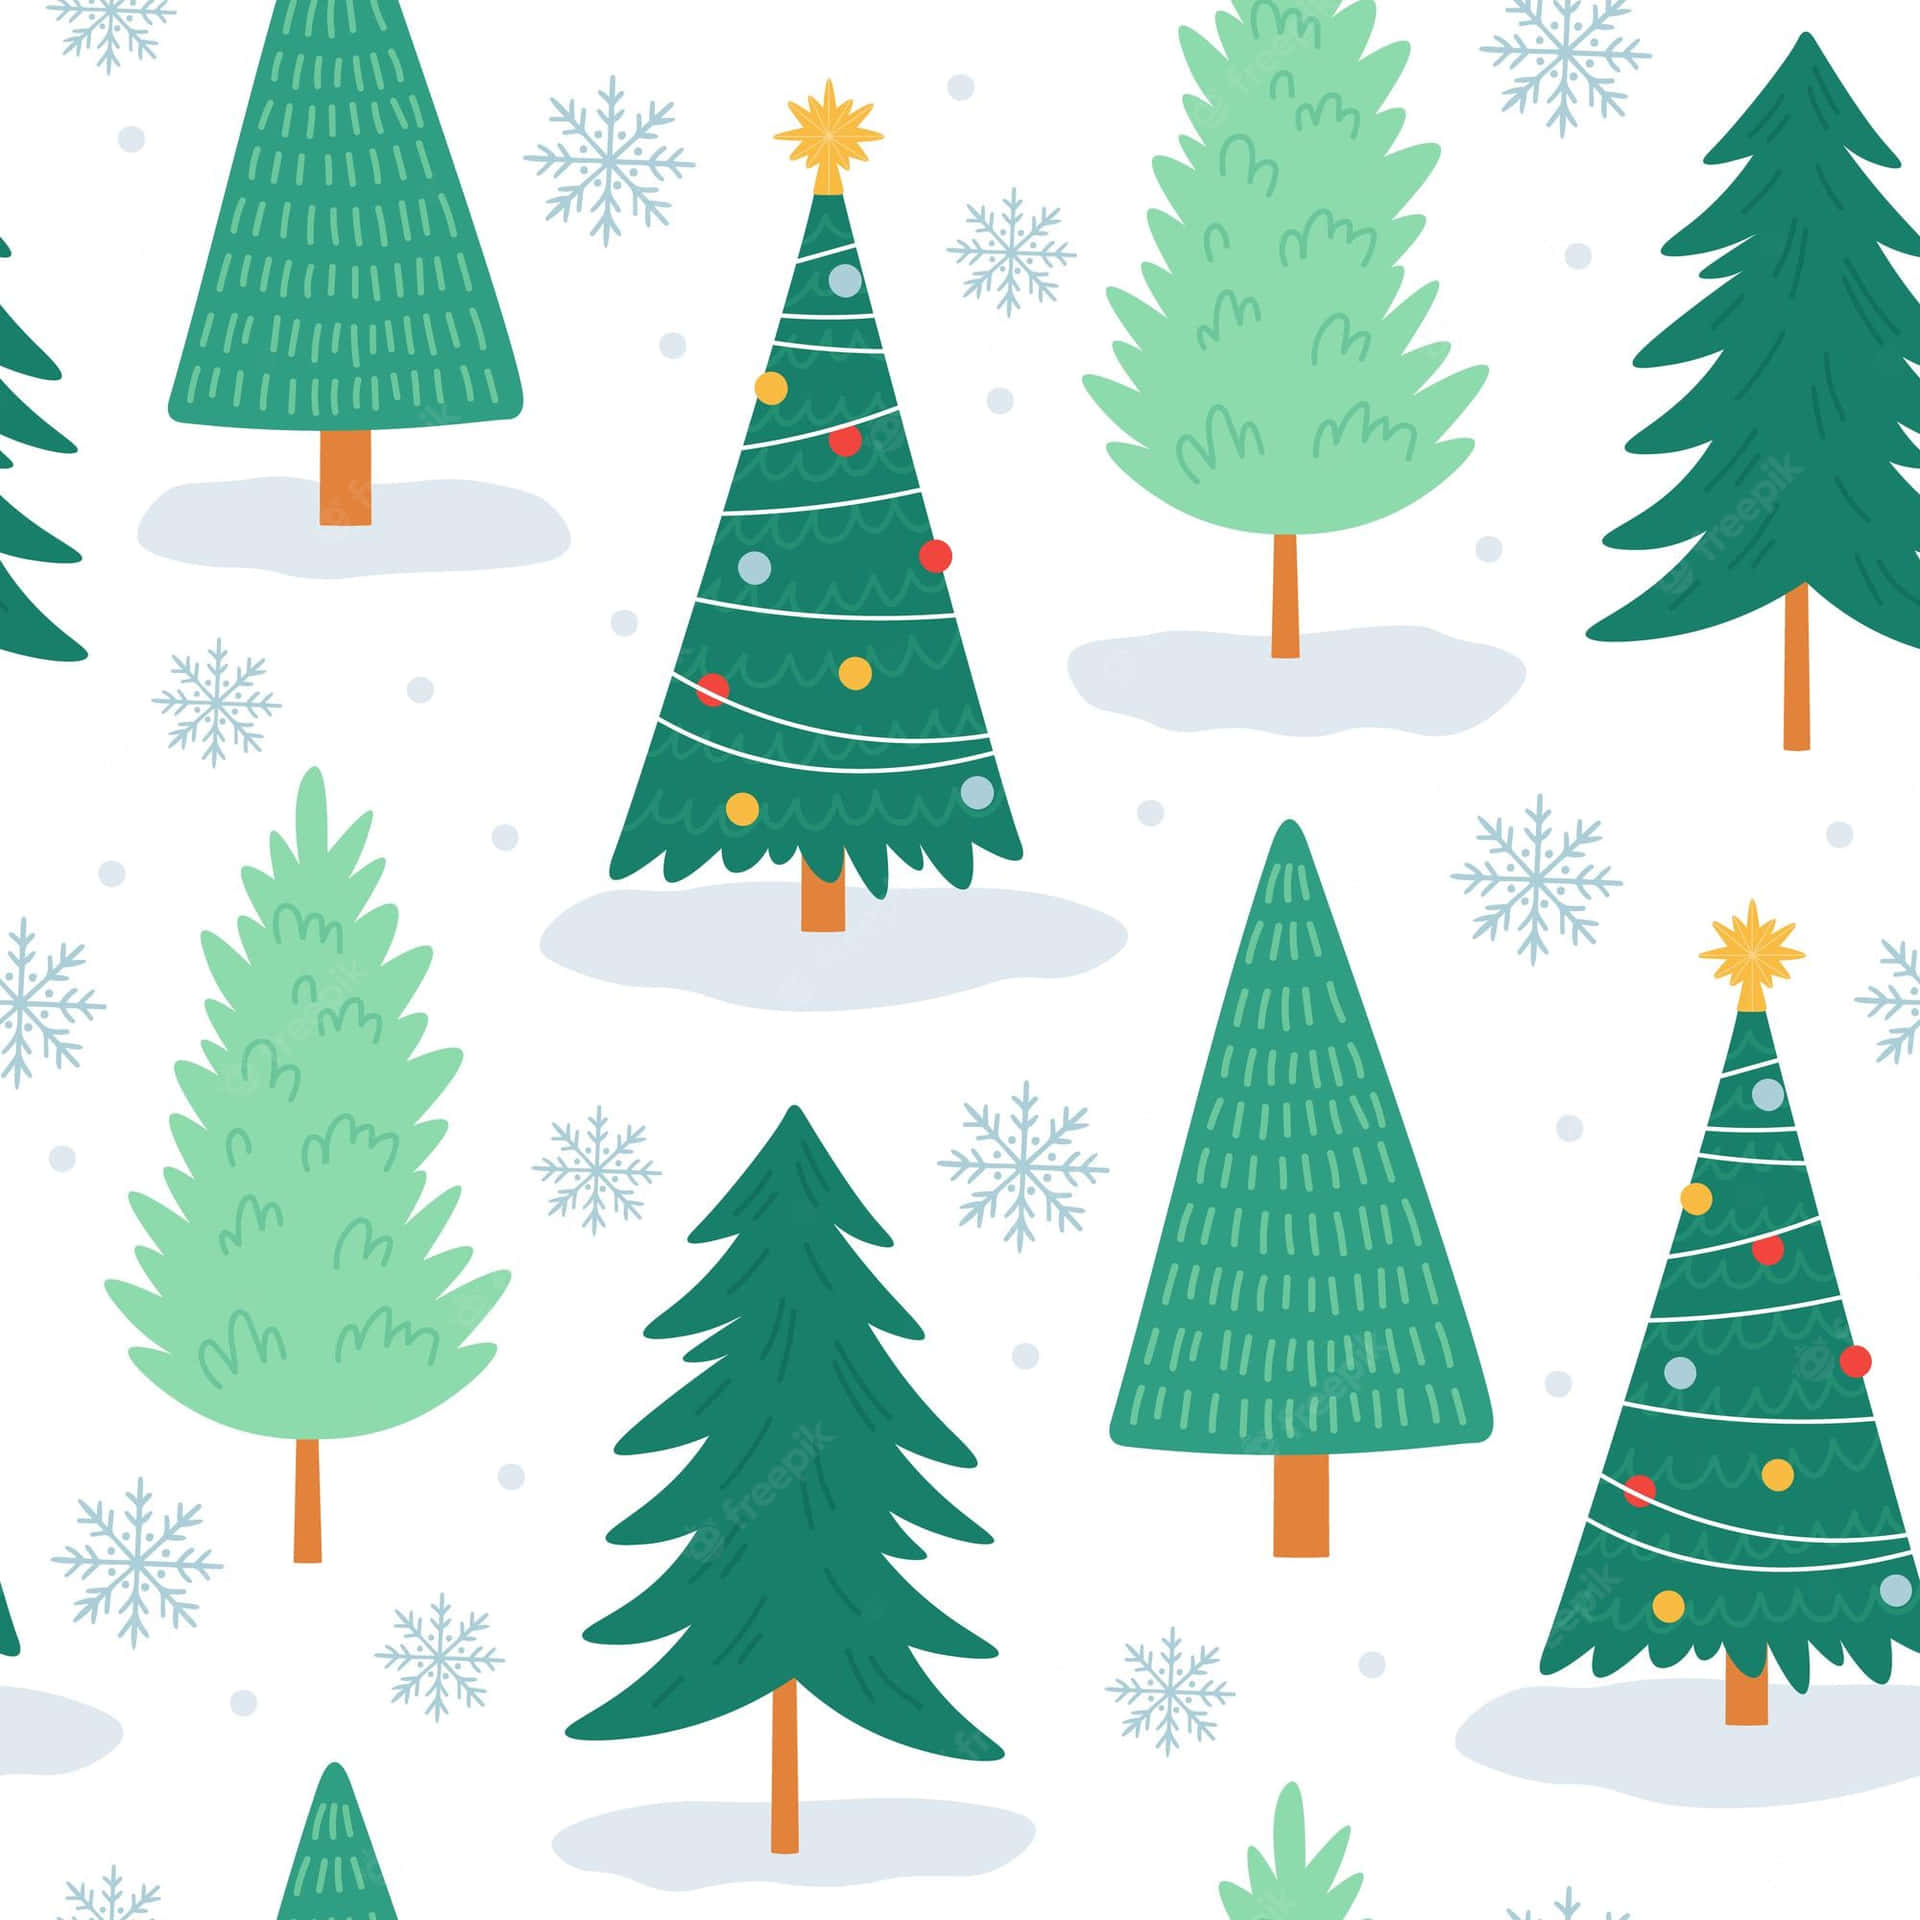 Feiernsie Dieses Weihnachten Mit Einem Niedlichen Festlichen Baum. Wallpaper